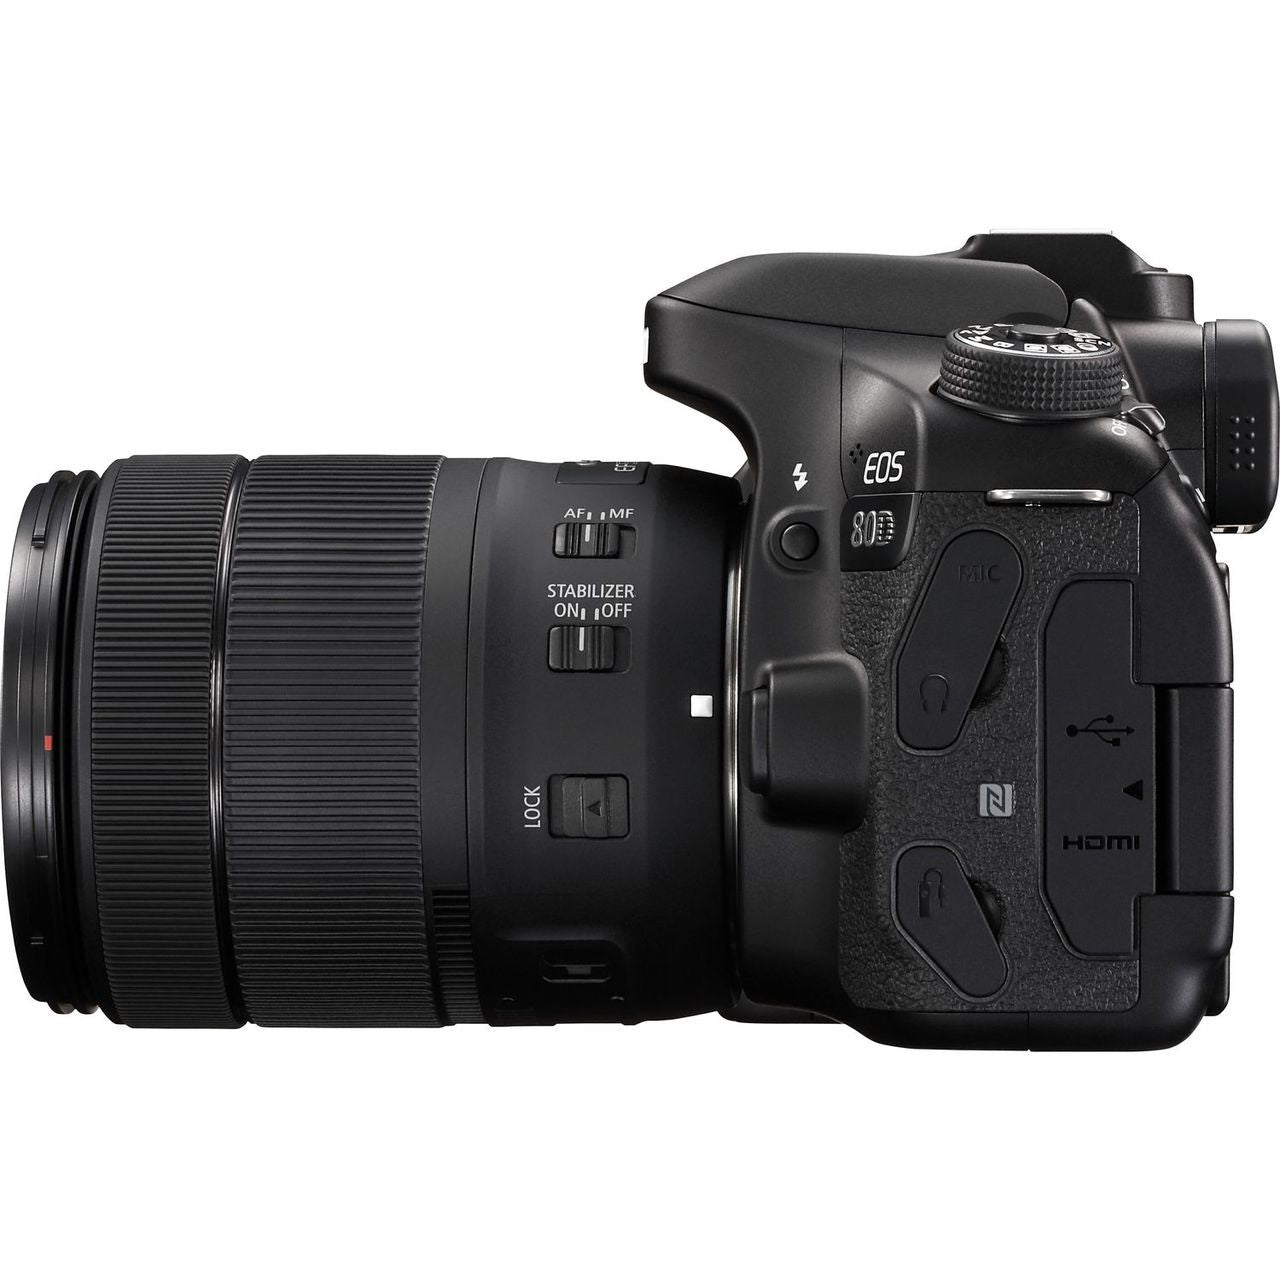 Canon 80D + 18-135mm (OCCASION GRADE A)